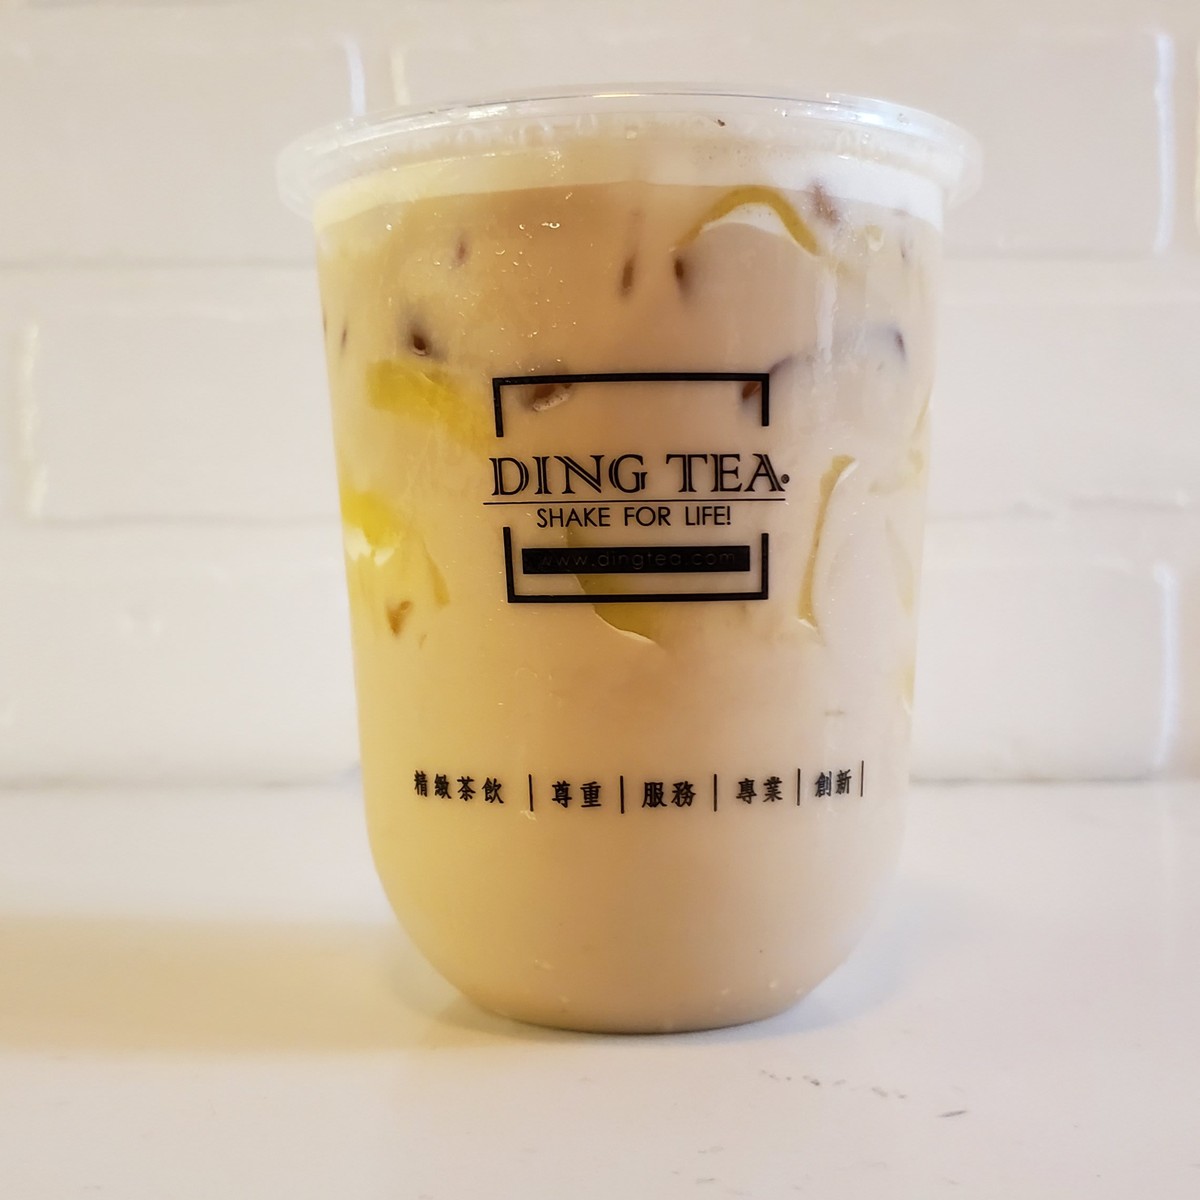 Ding Tea Vista - Vista, CA Restaurant, Menu + Delivery